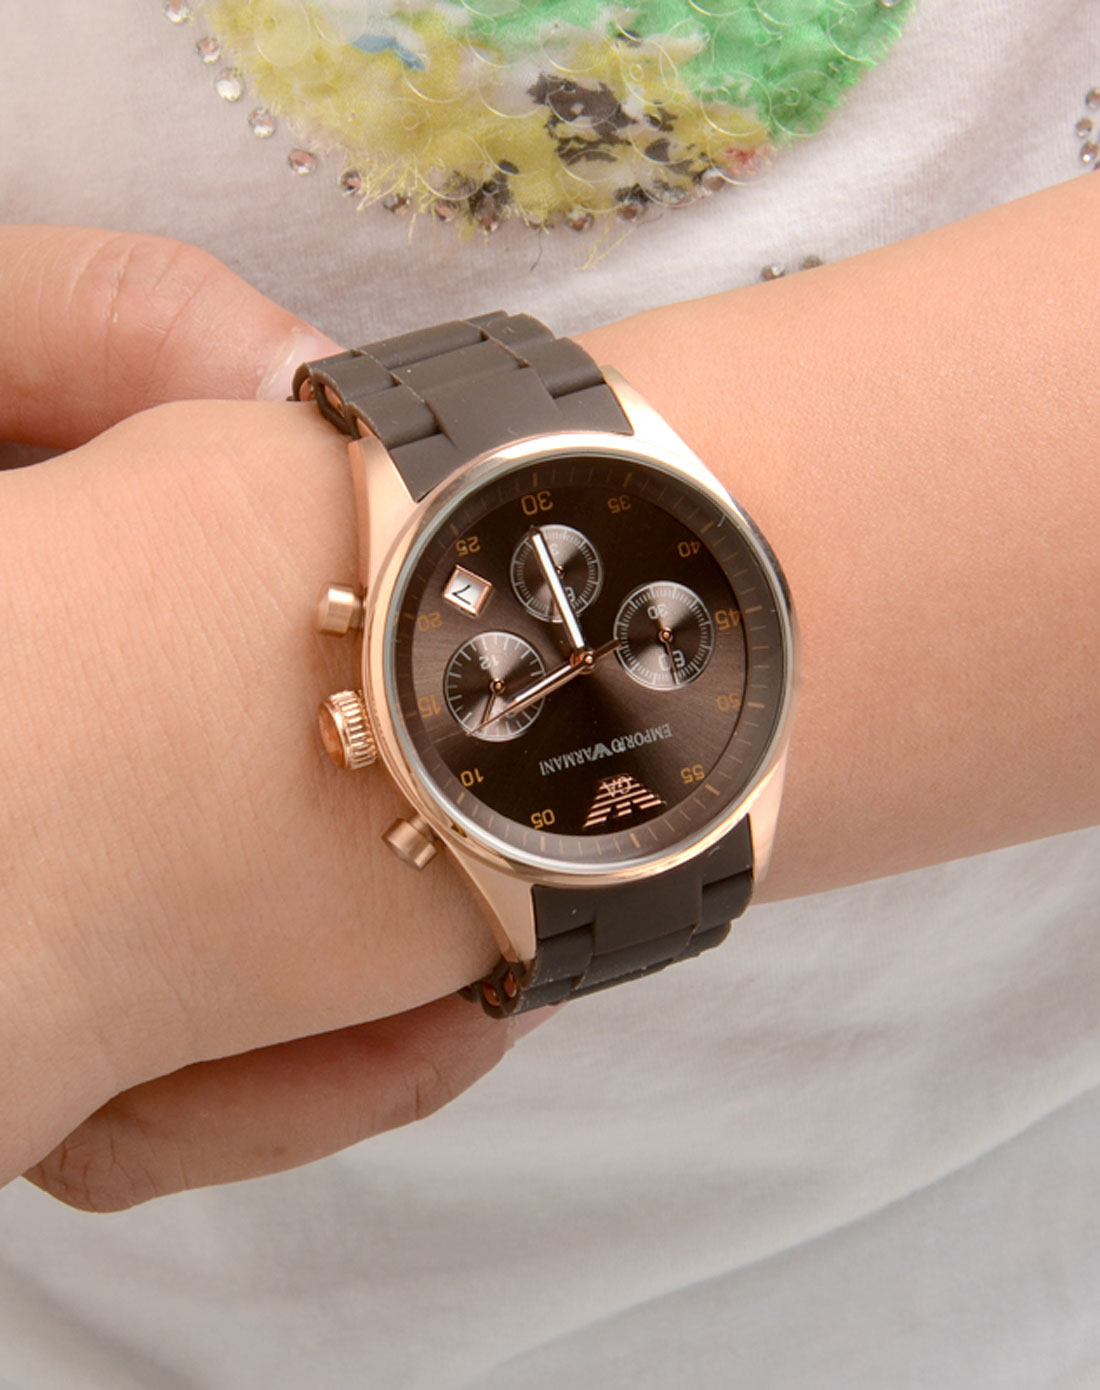 2、一块石英机芯的手表能用几年？